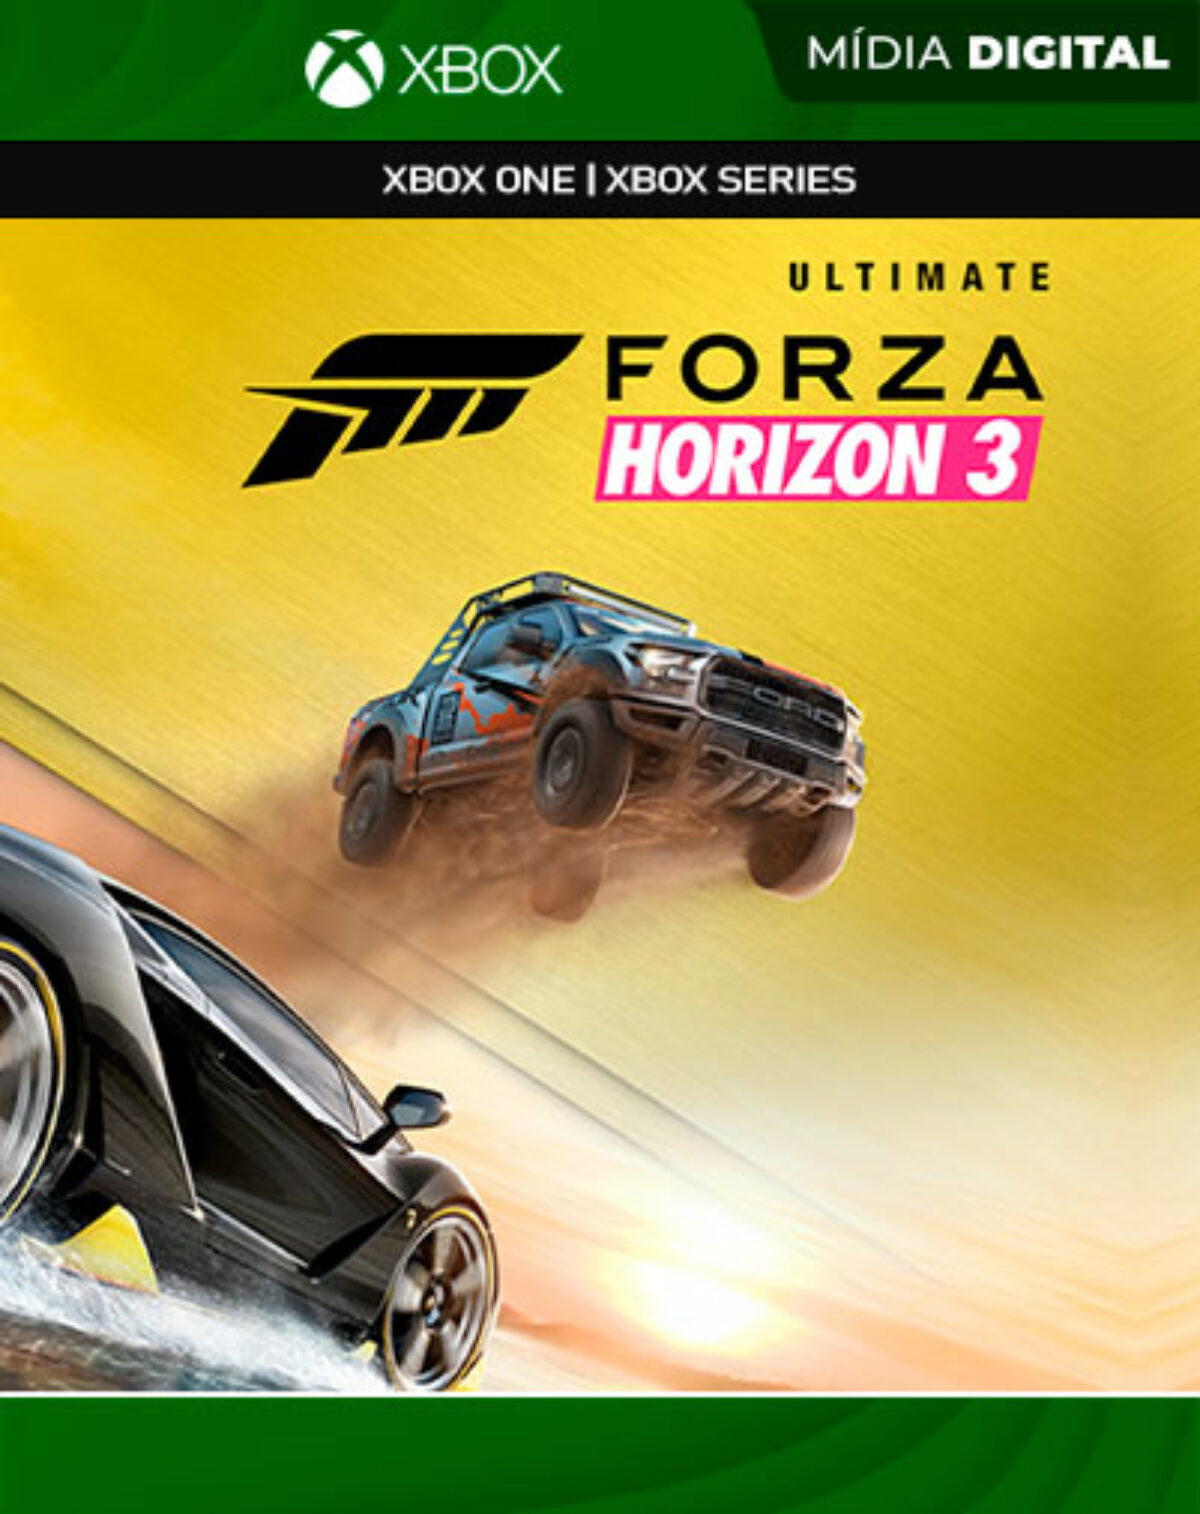 Comprar o Forza Horizon 3